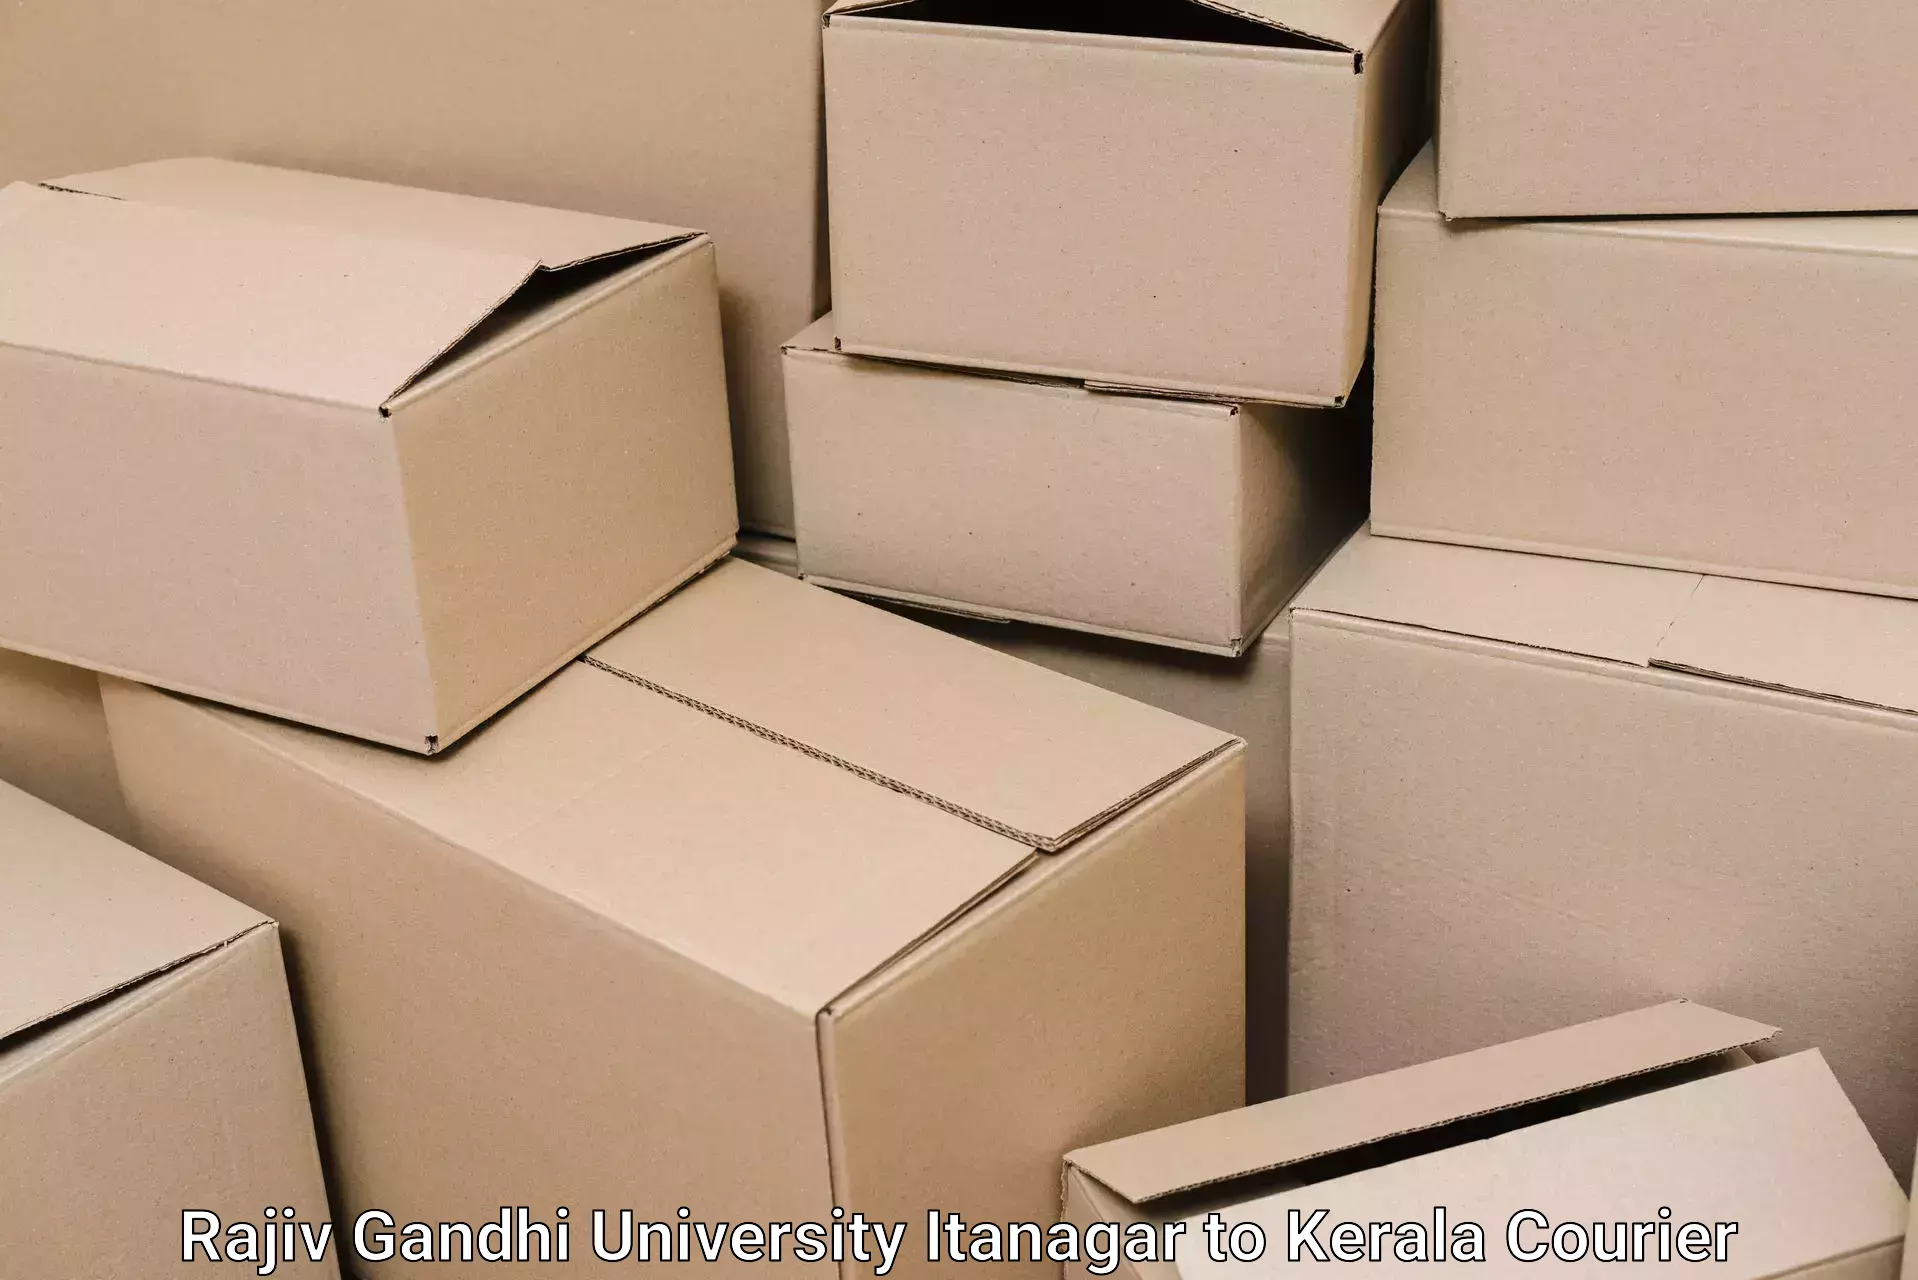 Moving and packing experts Rajiv Gandhi University Itanagar to Kannur